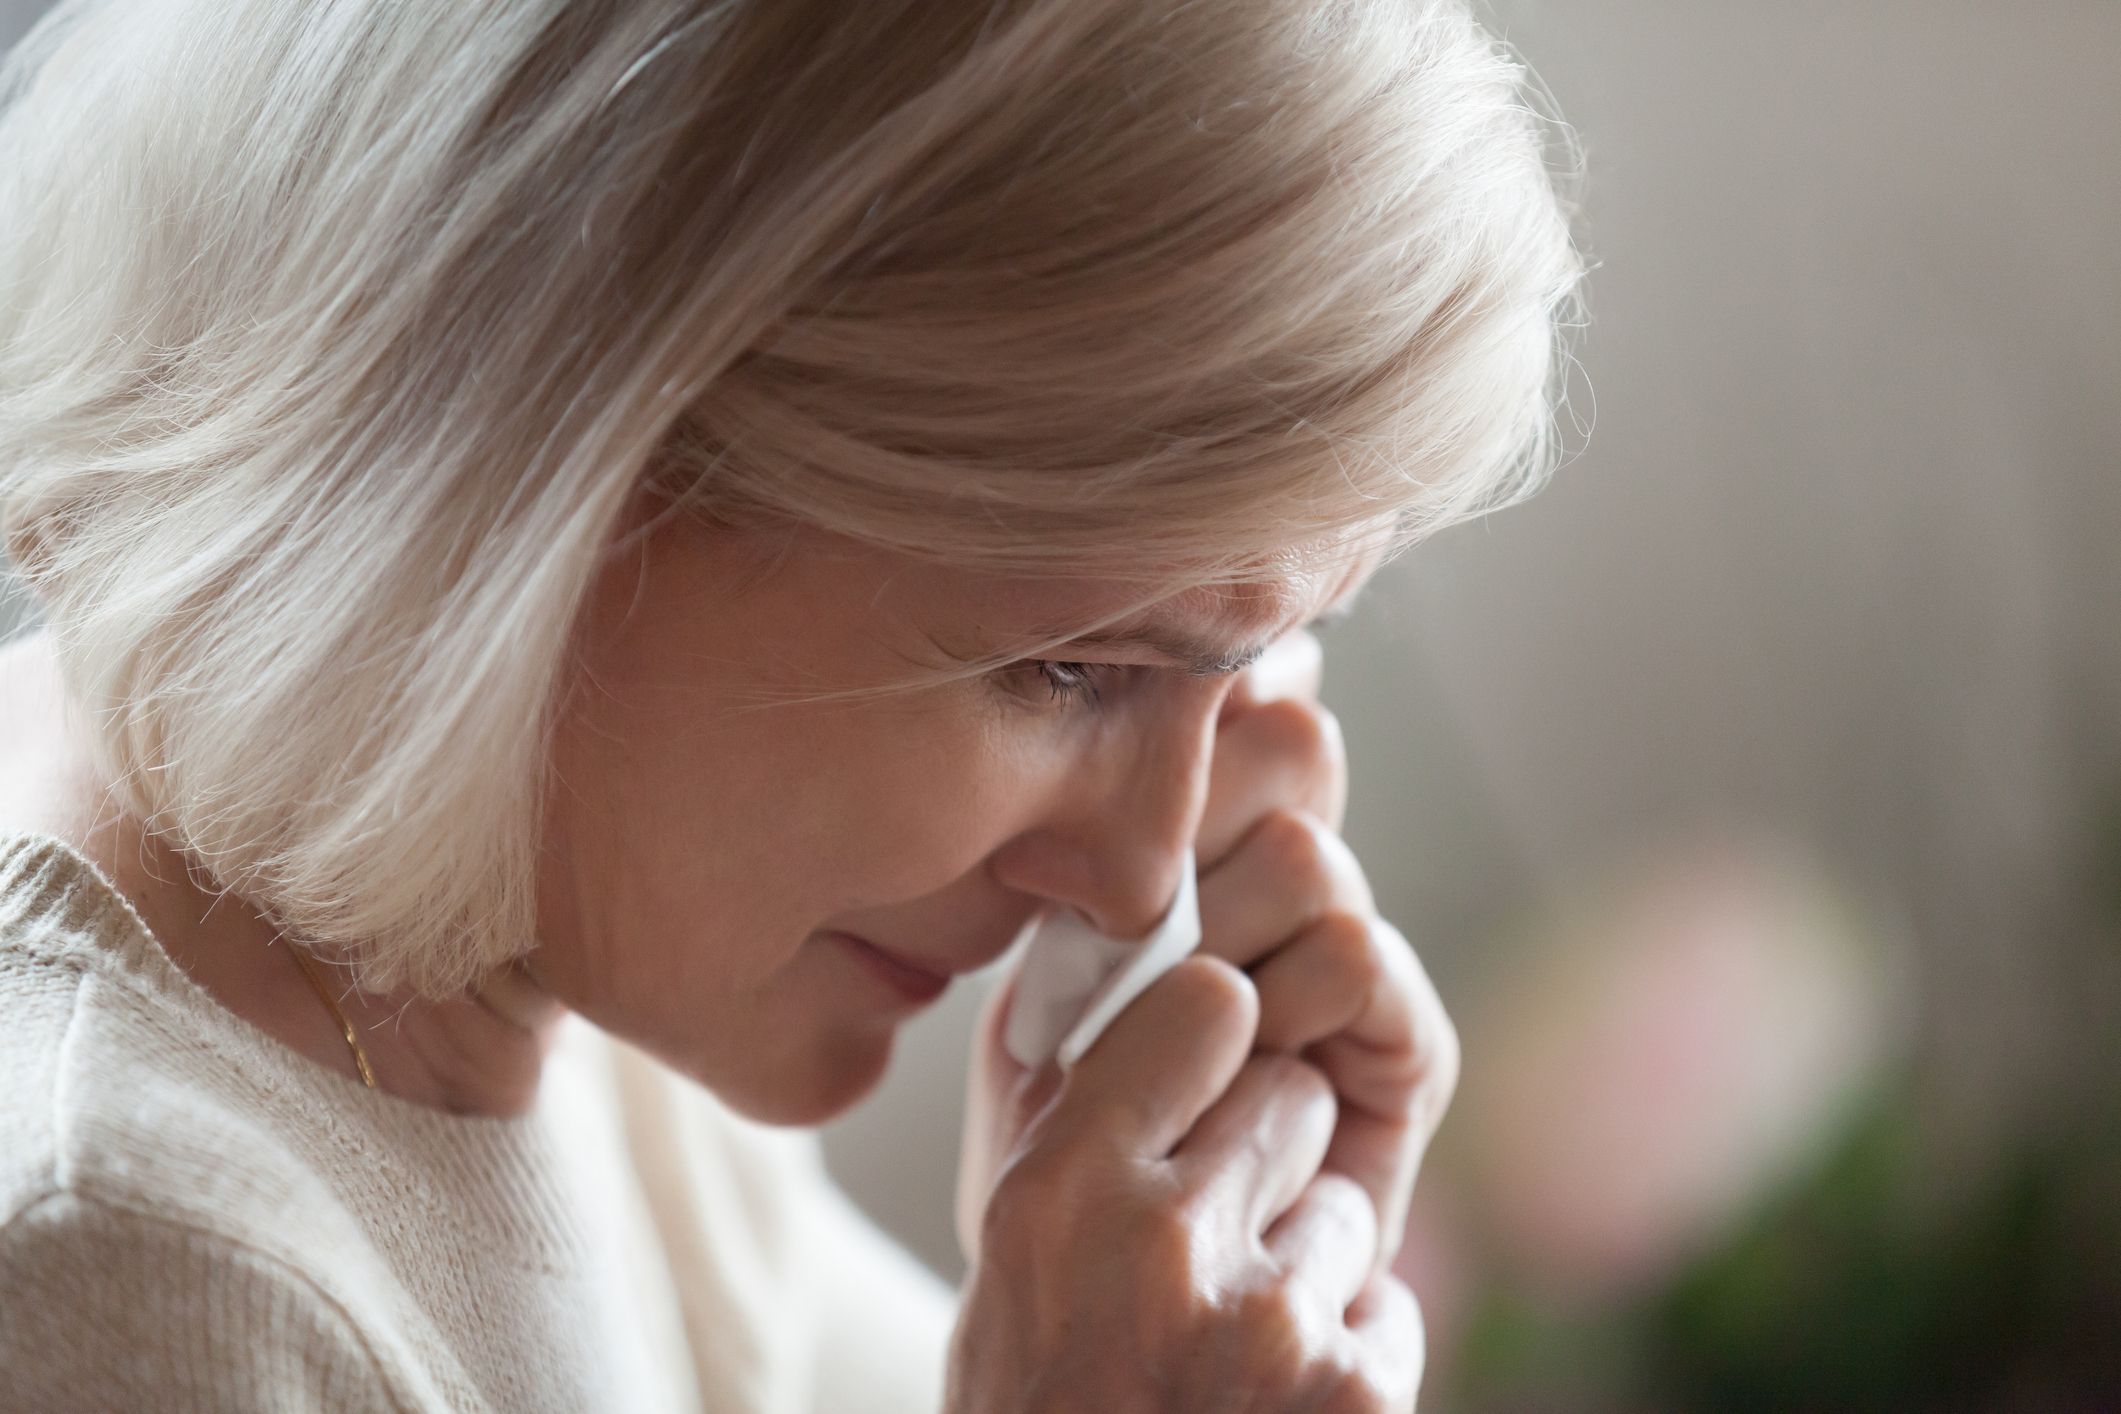 Eine aufgebrachte, weinende Frau | Quelle: Getty Images